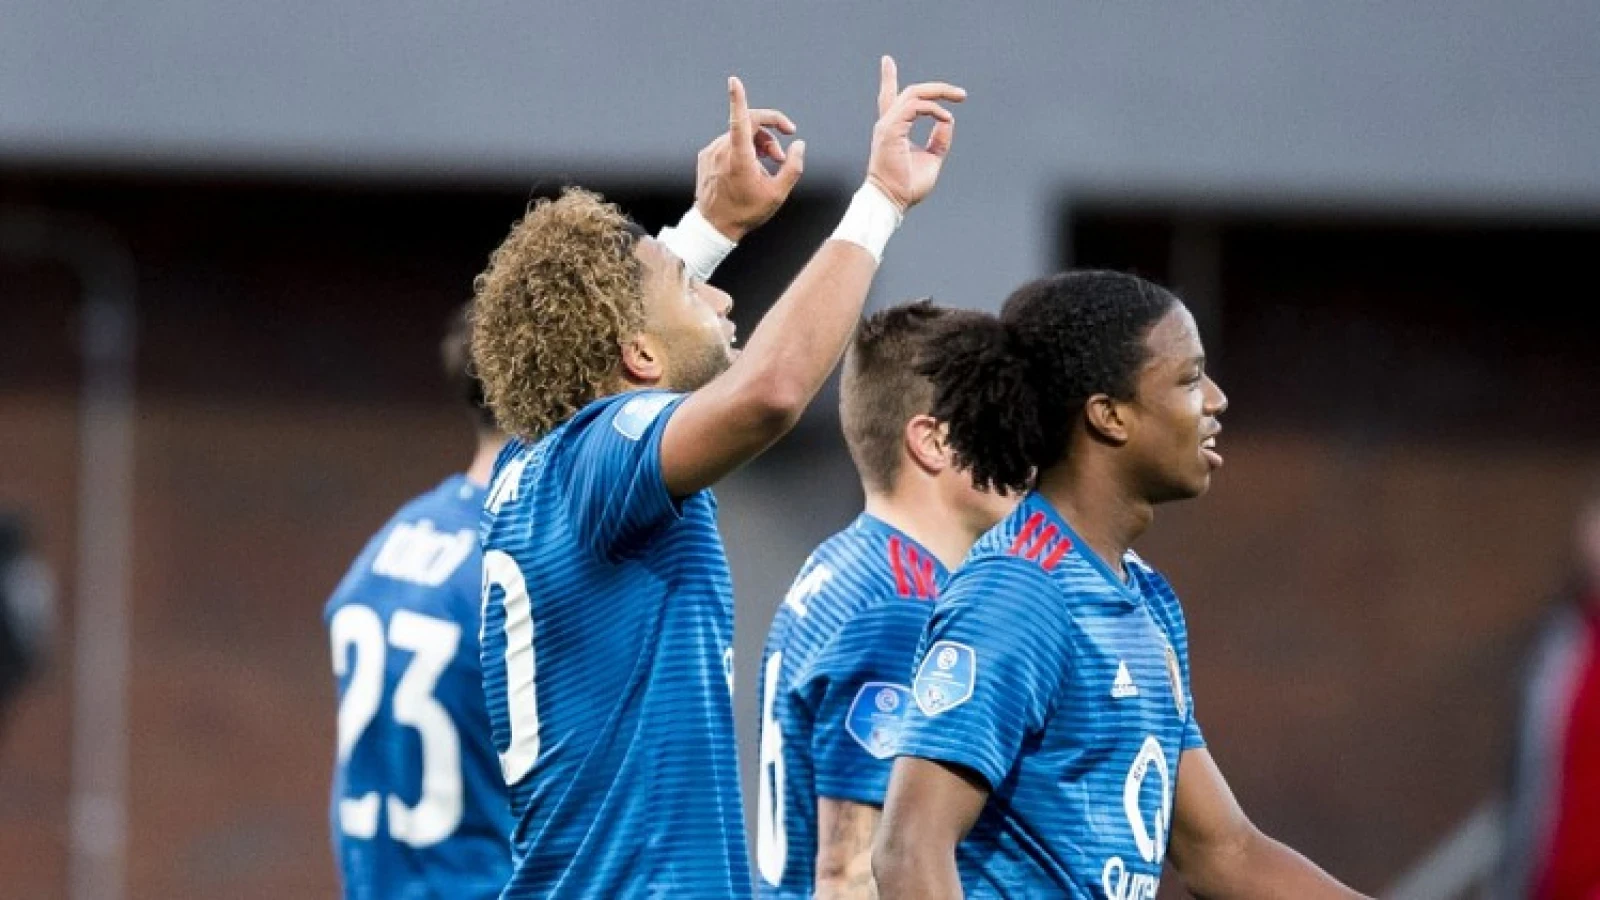 TERUGBLIK #4 | Feyenoord al vroeg uitgeschakeld in Europa